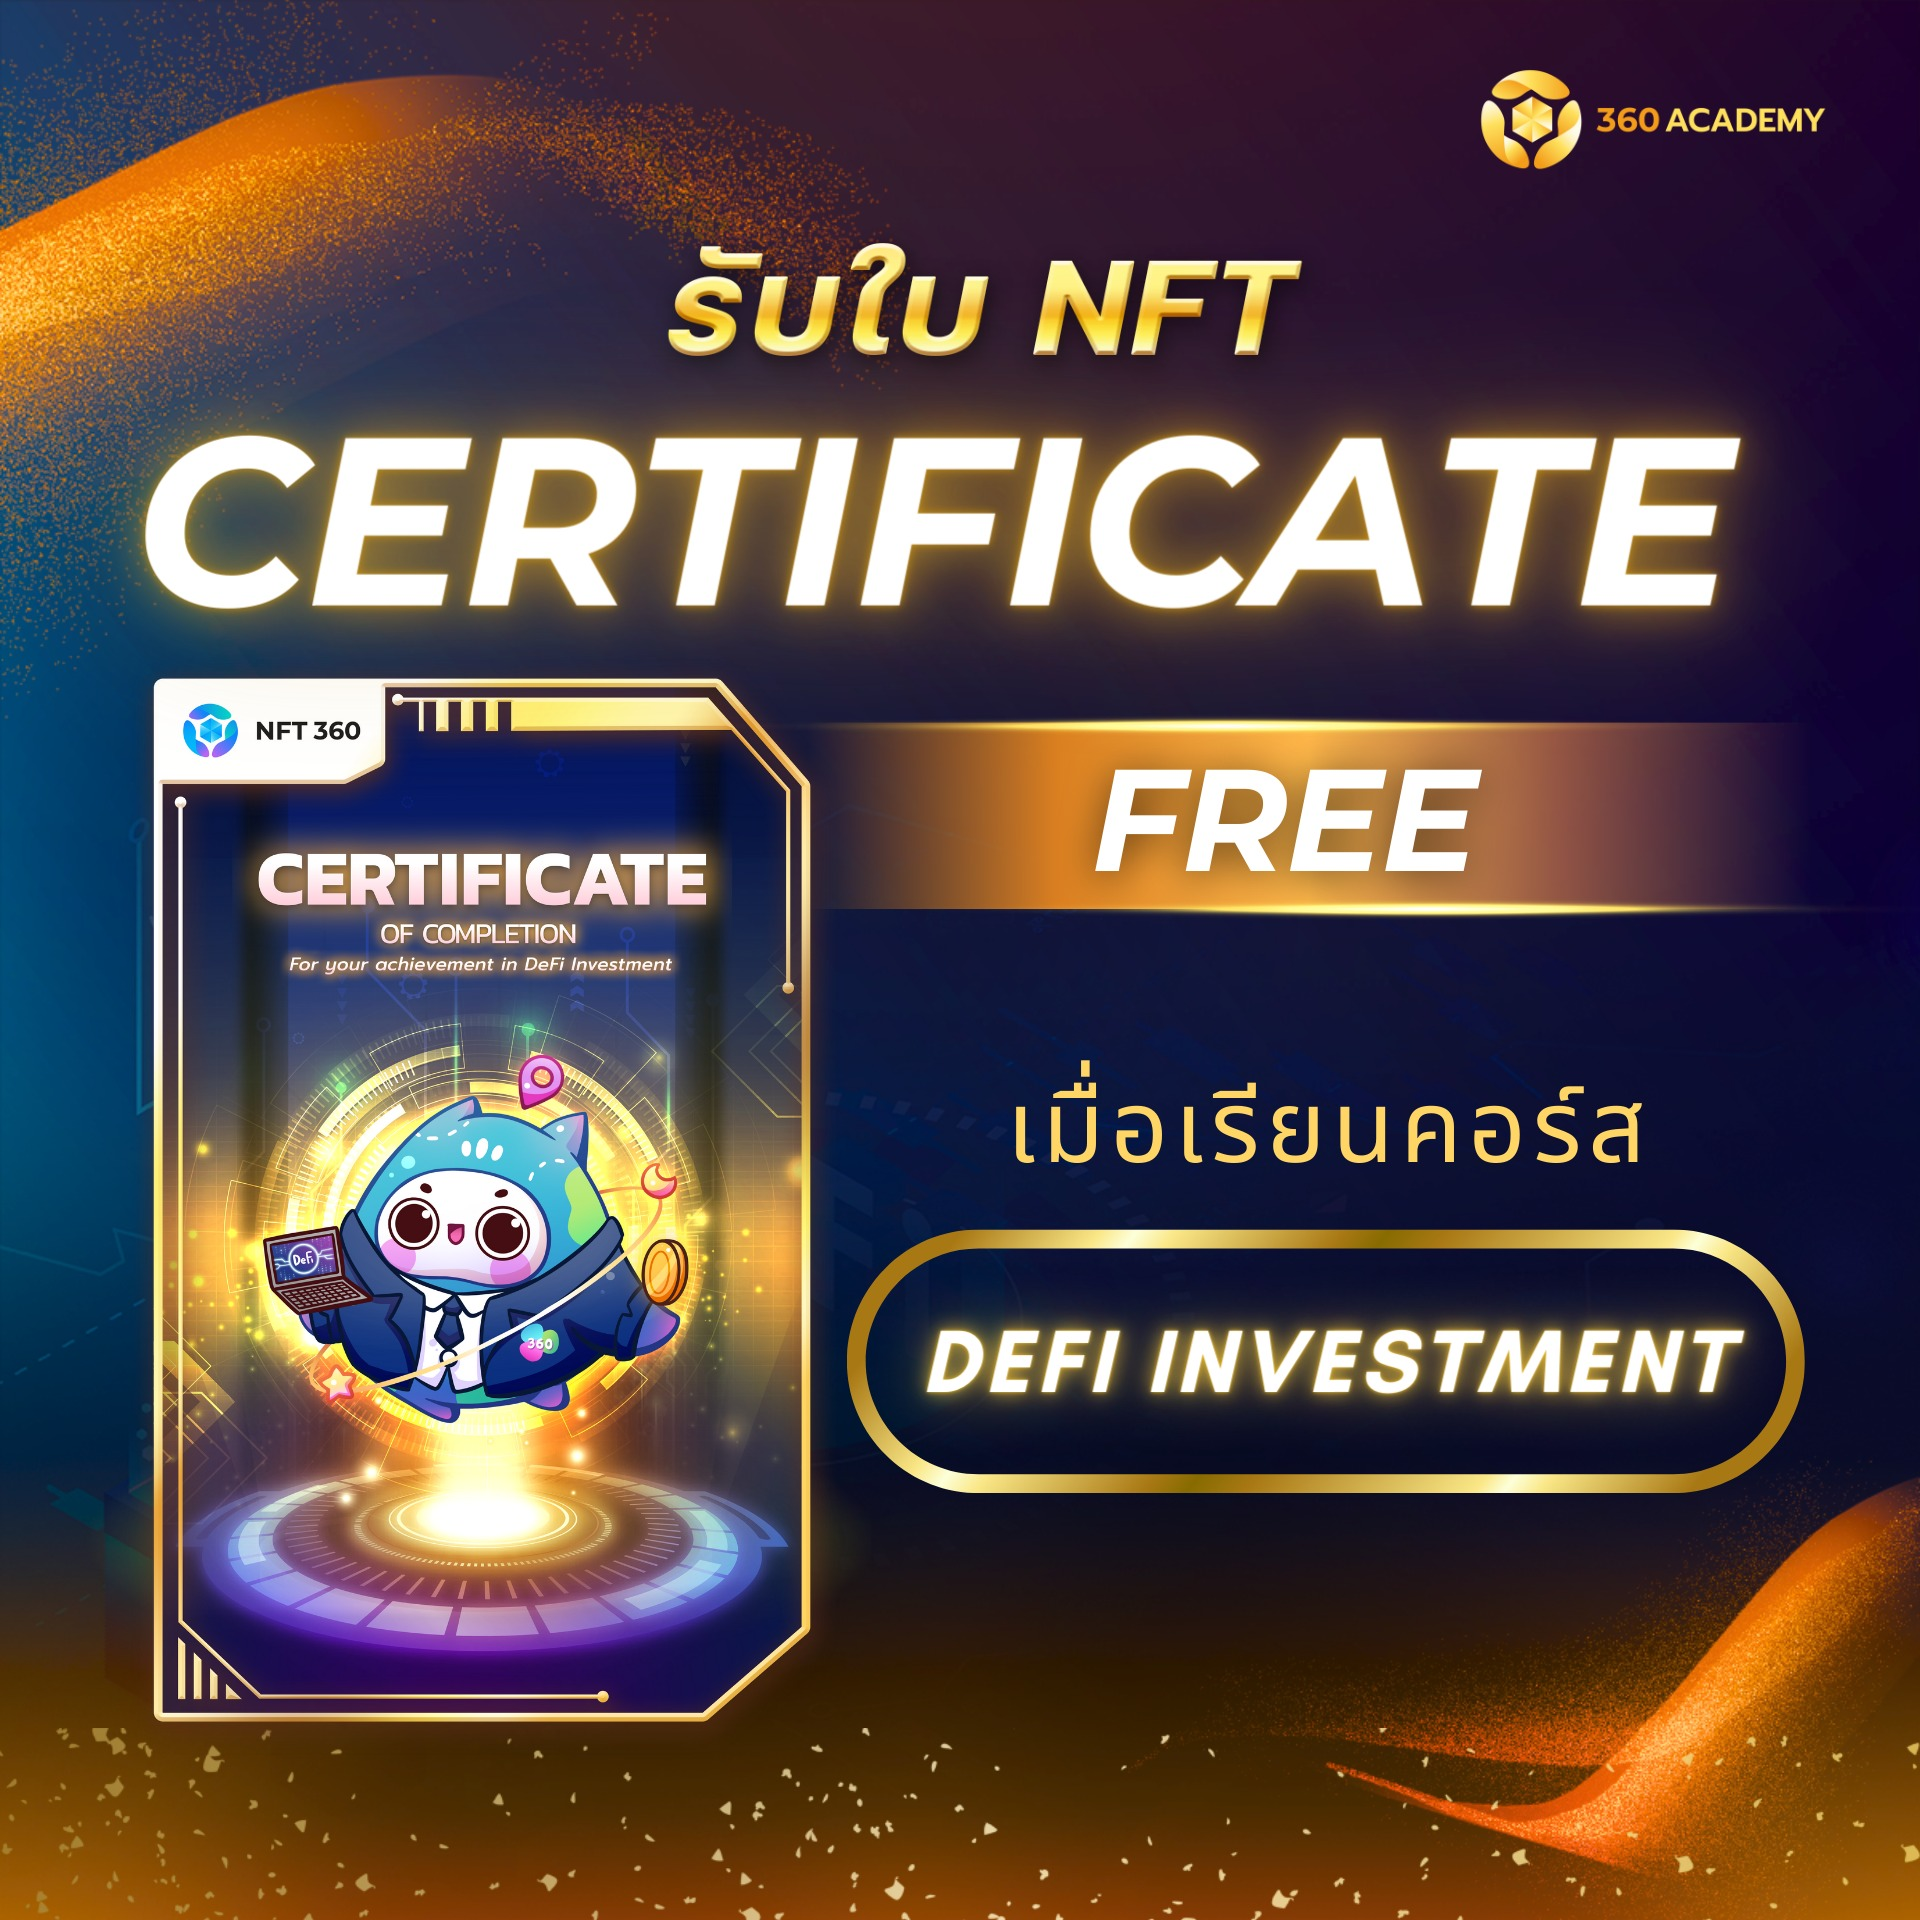 แจกใบ Certificate ฟรี ในรูปแบบ NFT !!